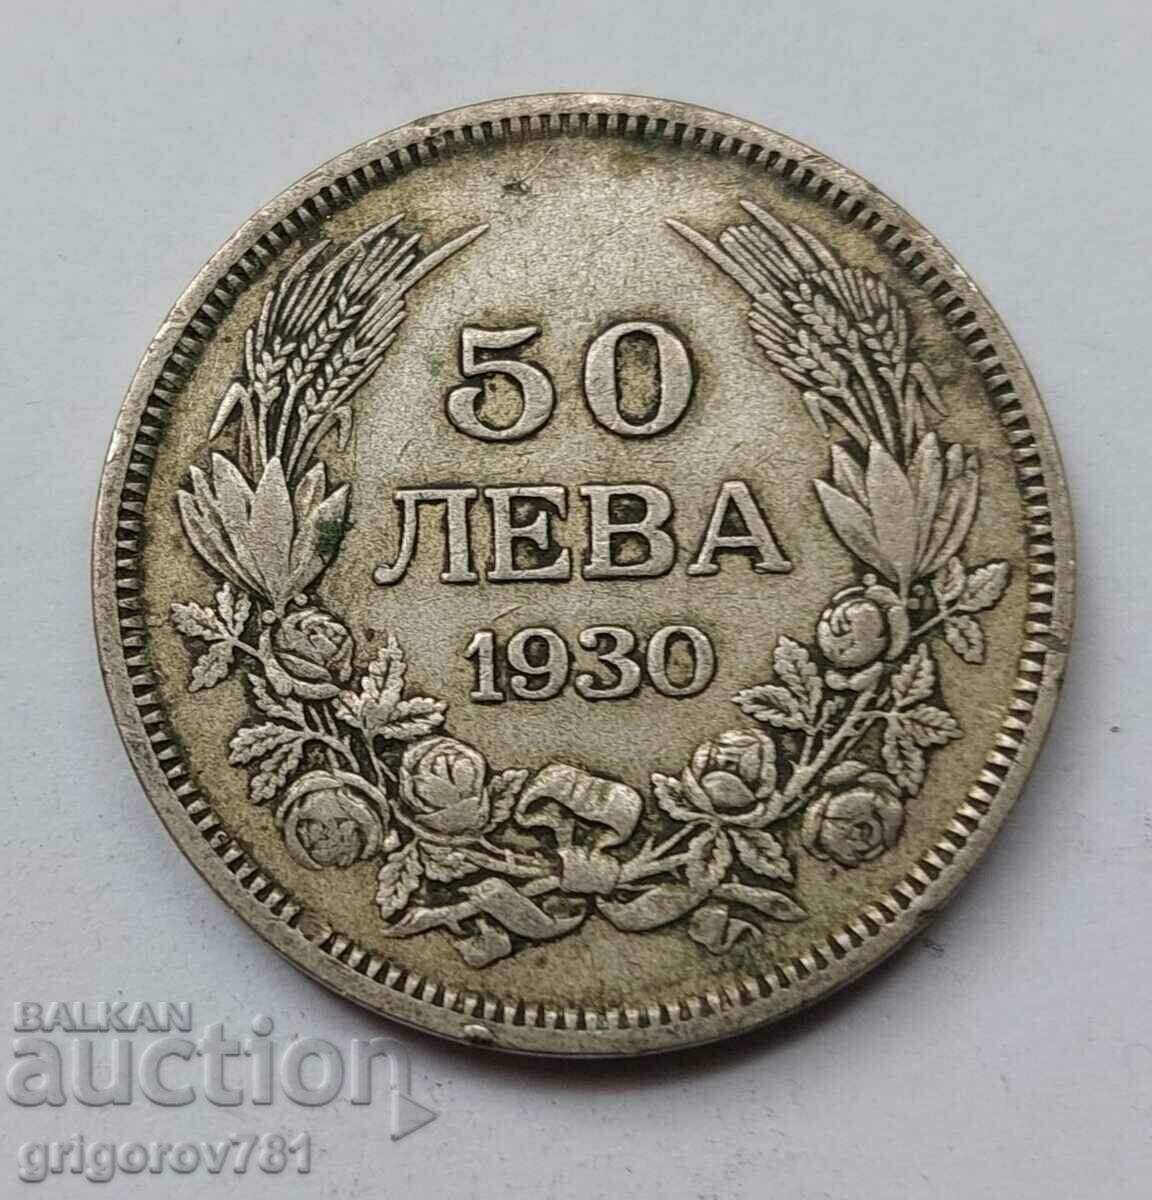 Ασήμι 50 λέβα Βουλγαρία 1930 - ασημένιο νόμισμα #79